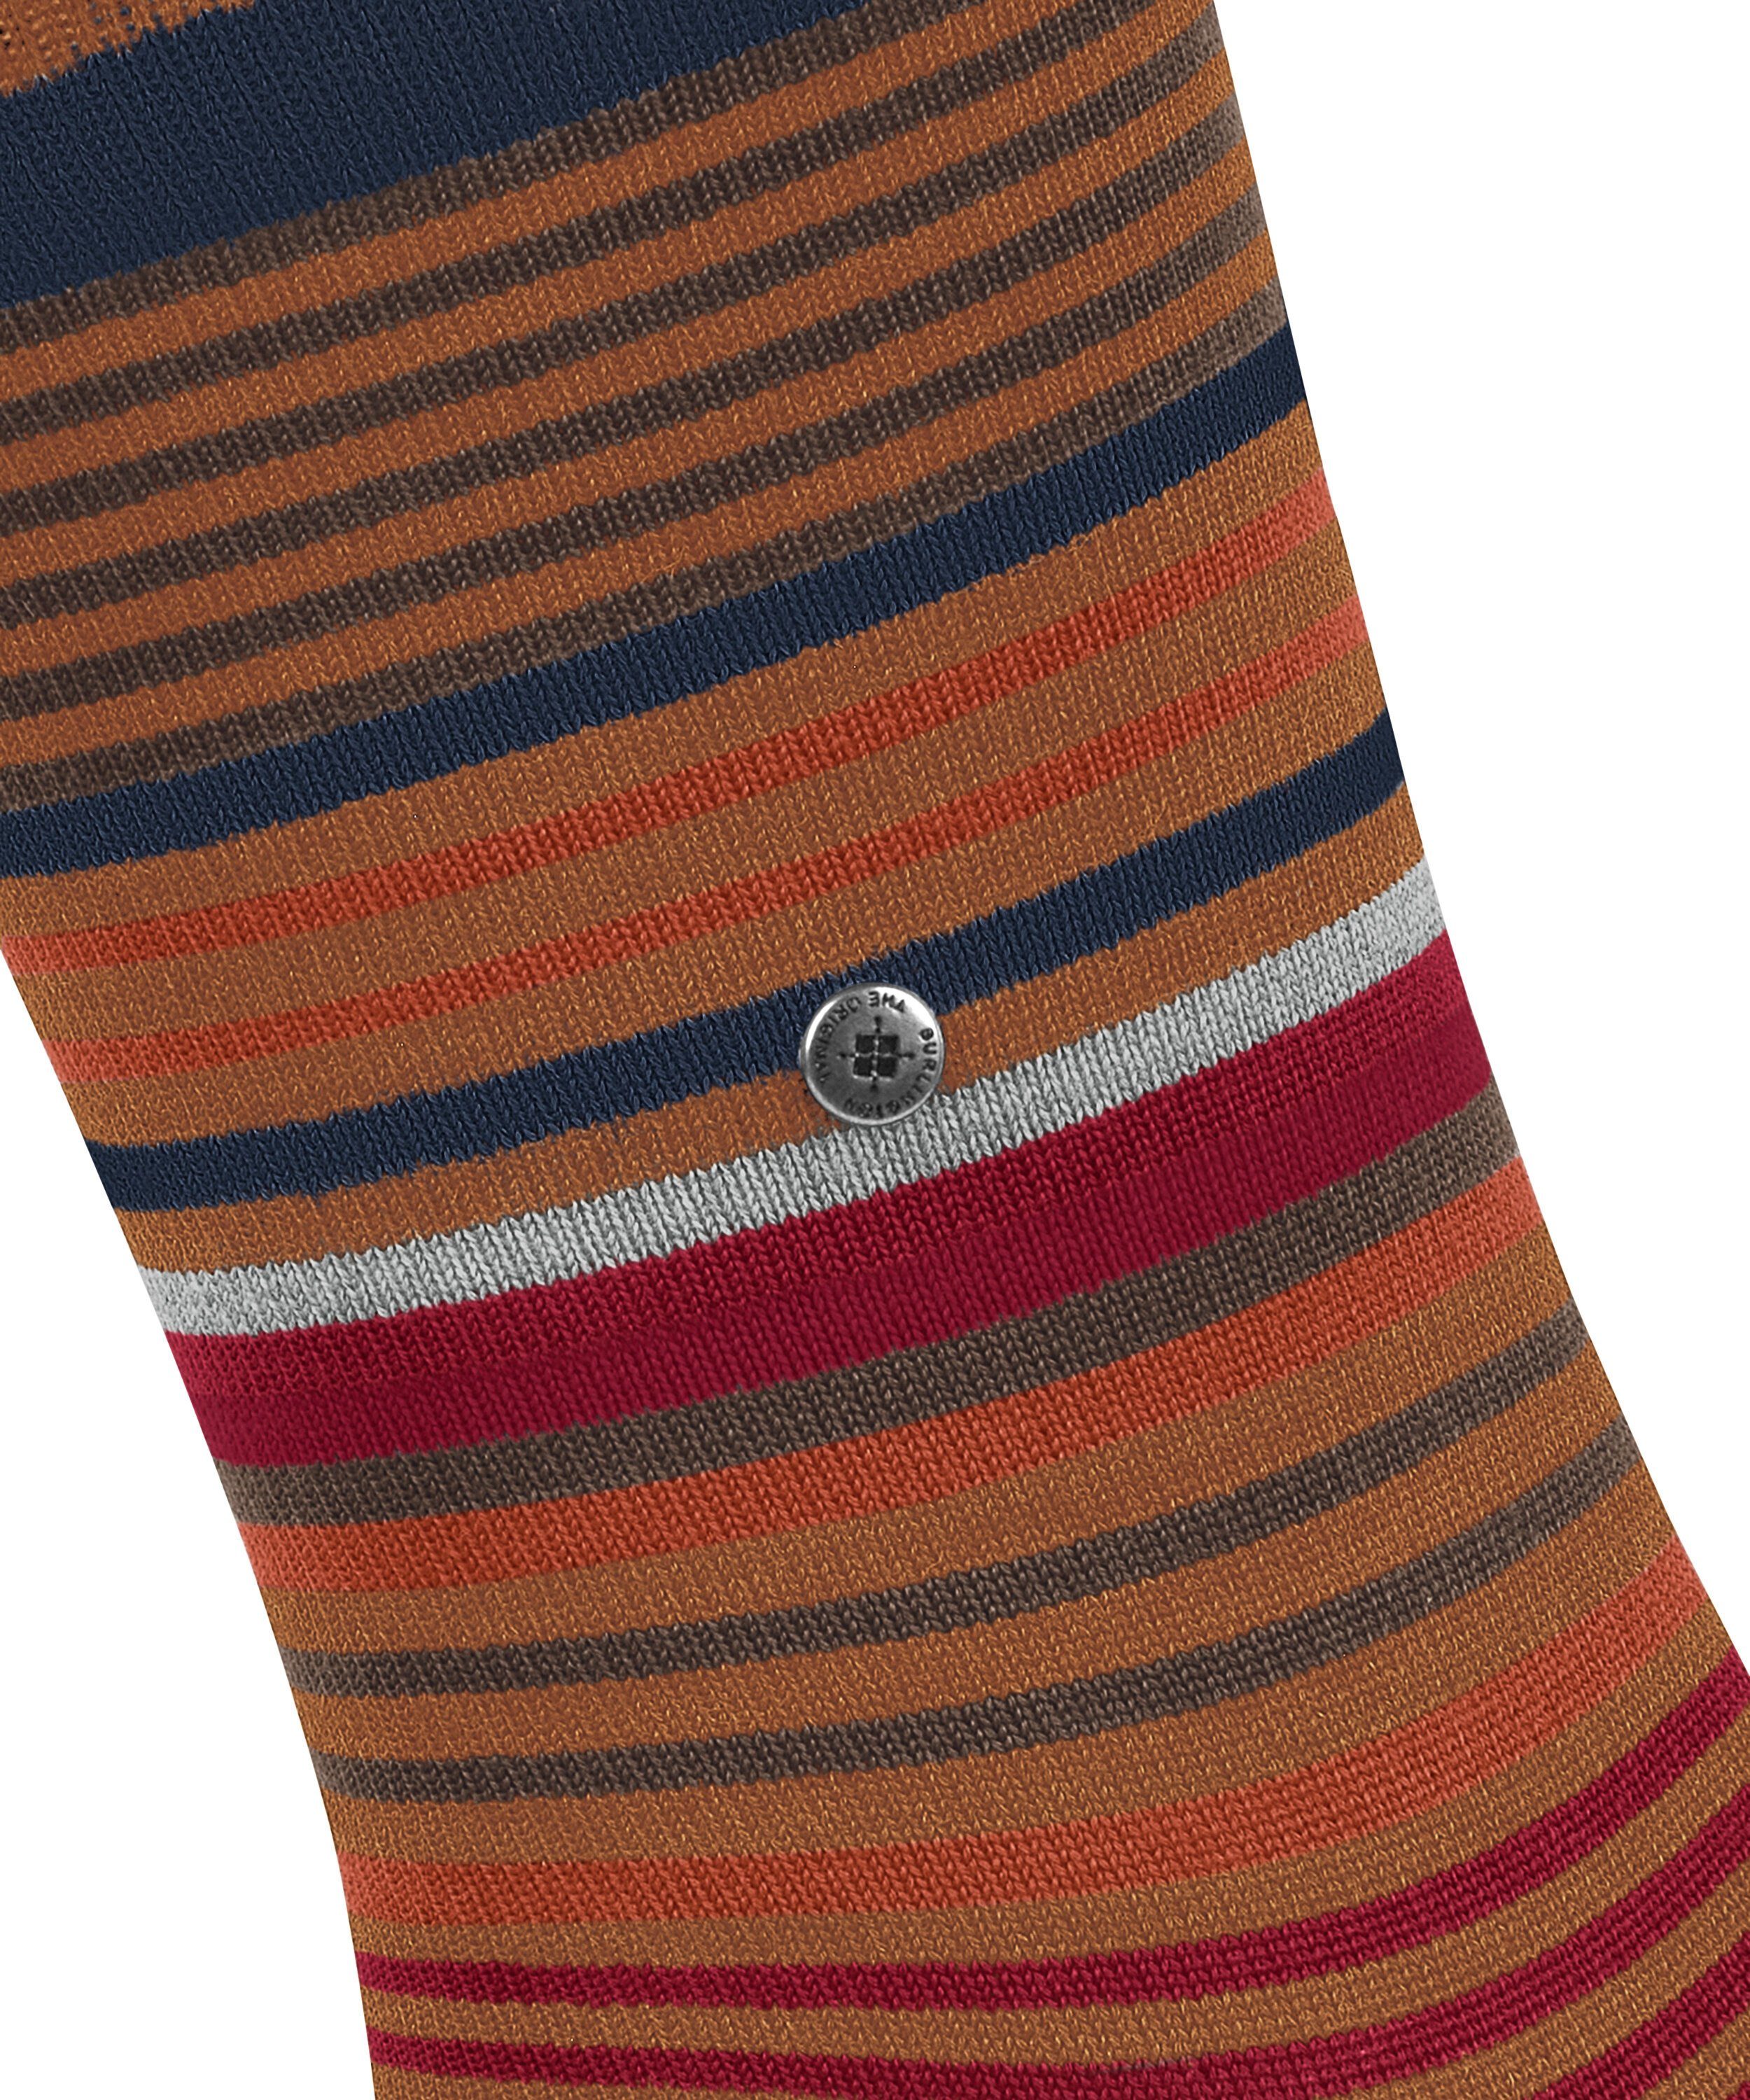 sierra (1-Paar) Socken Stripe Burlington (5190)